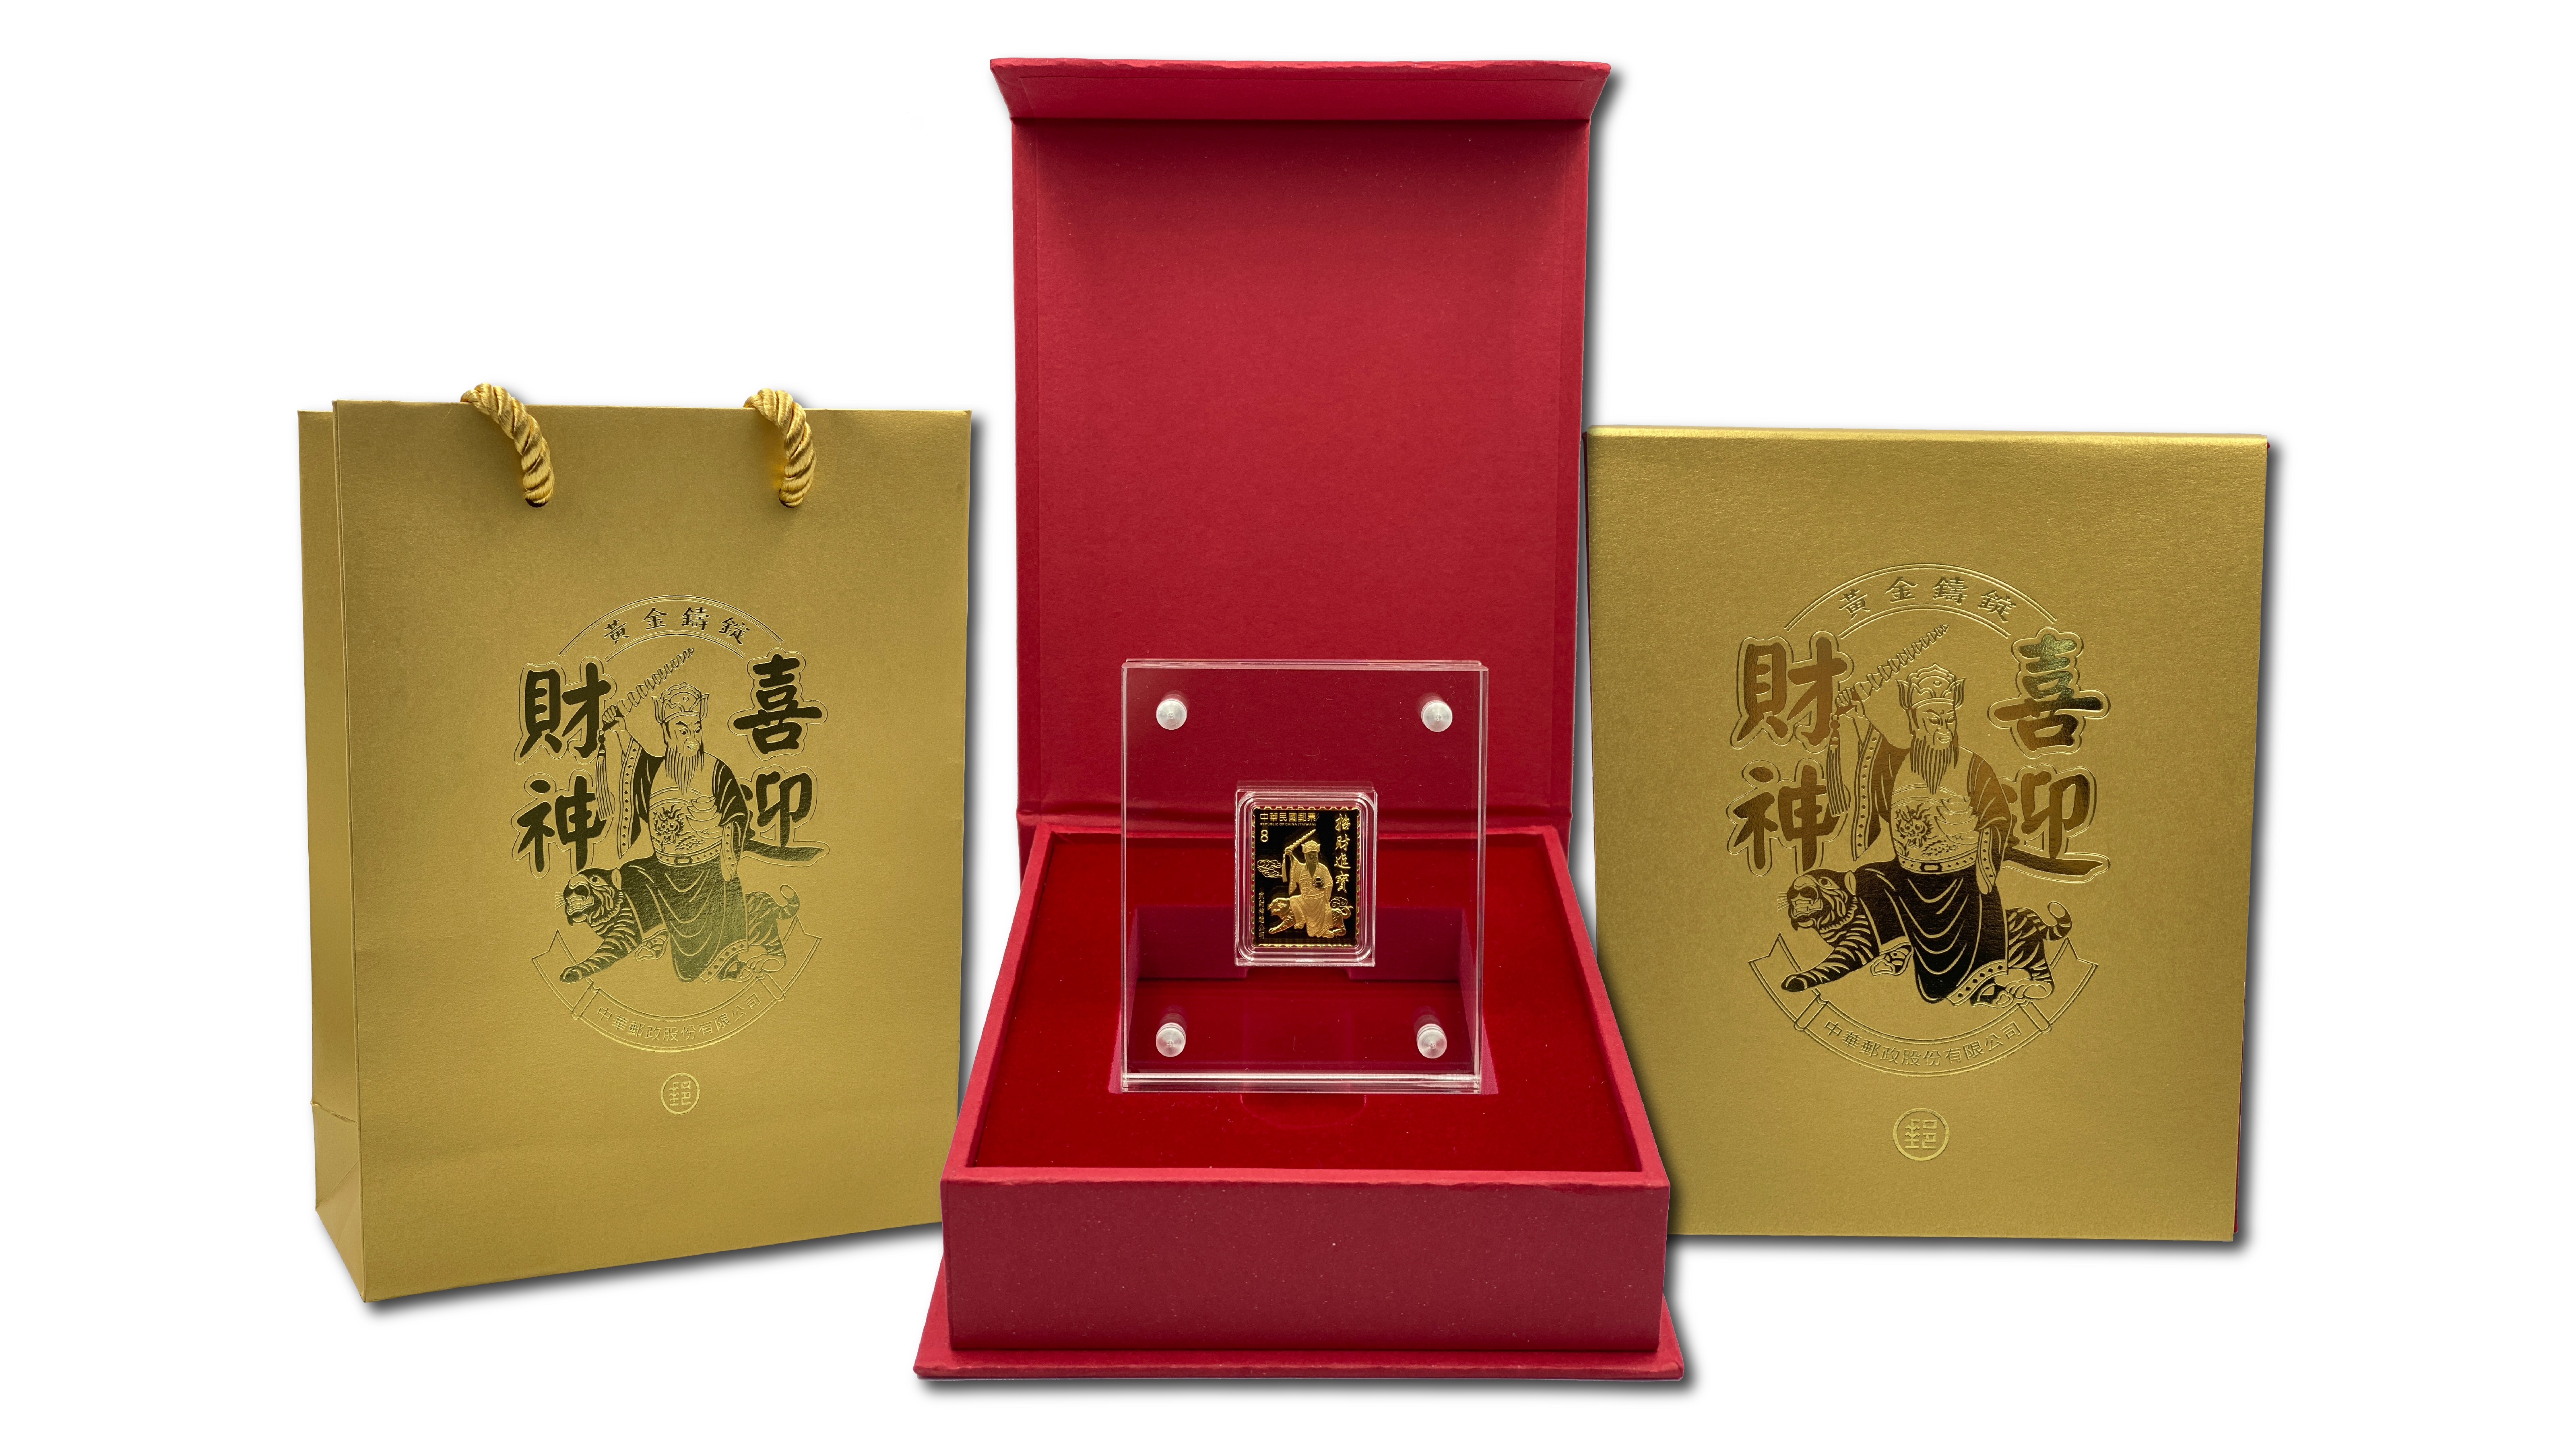 中華郵政推「喜迎財神黃金鑄錠」